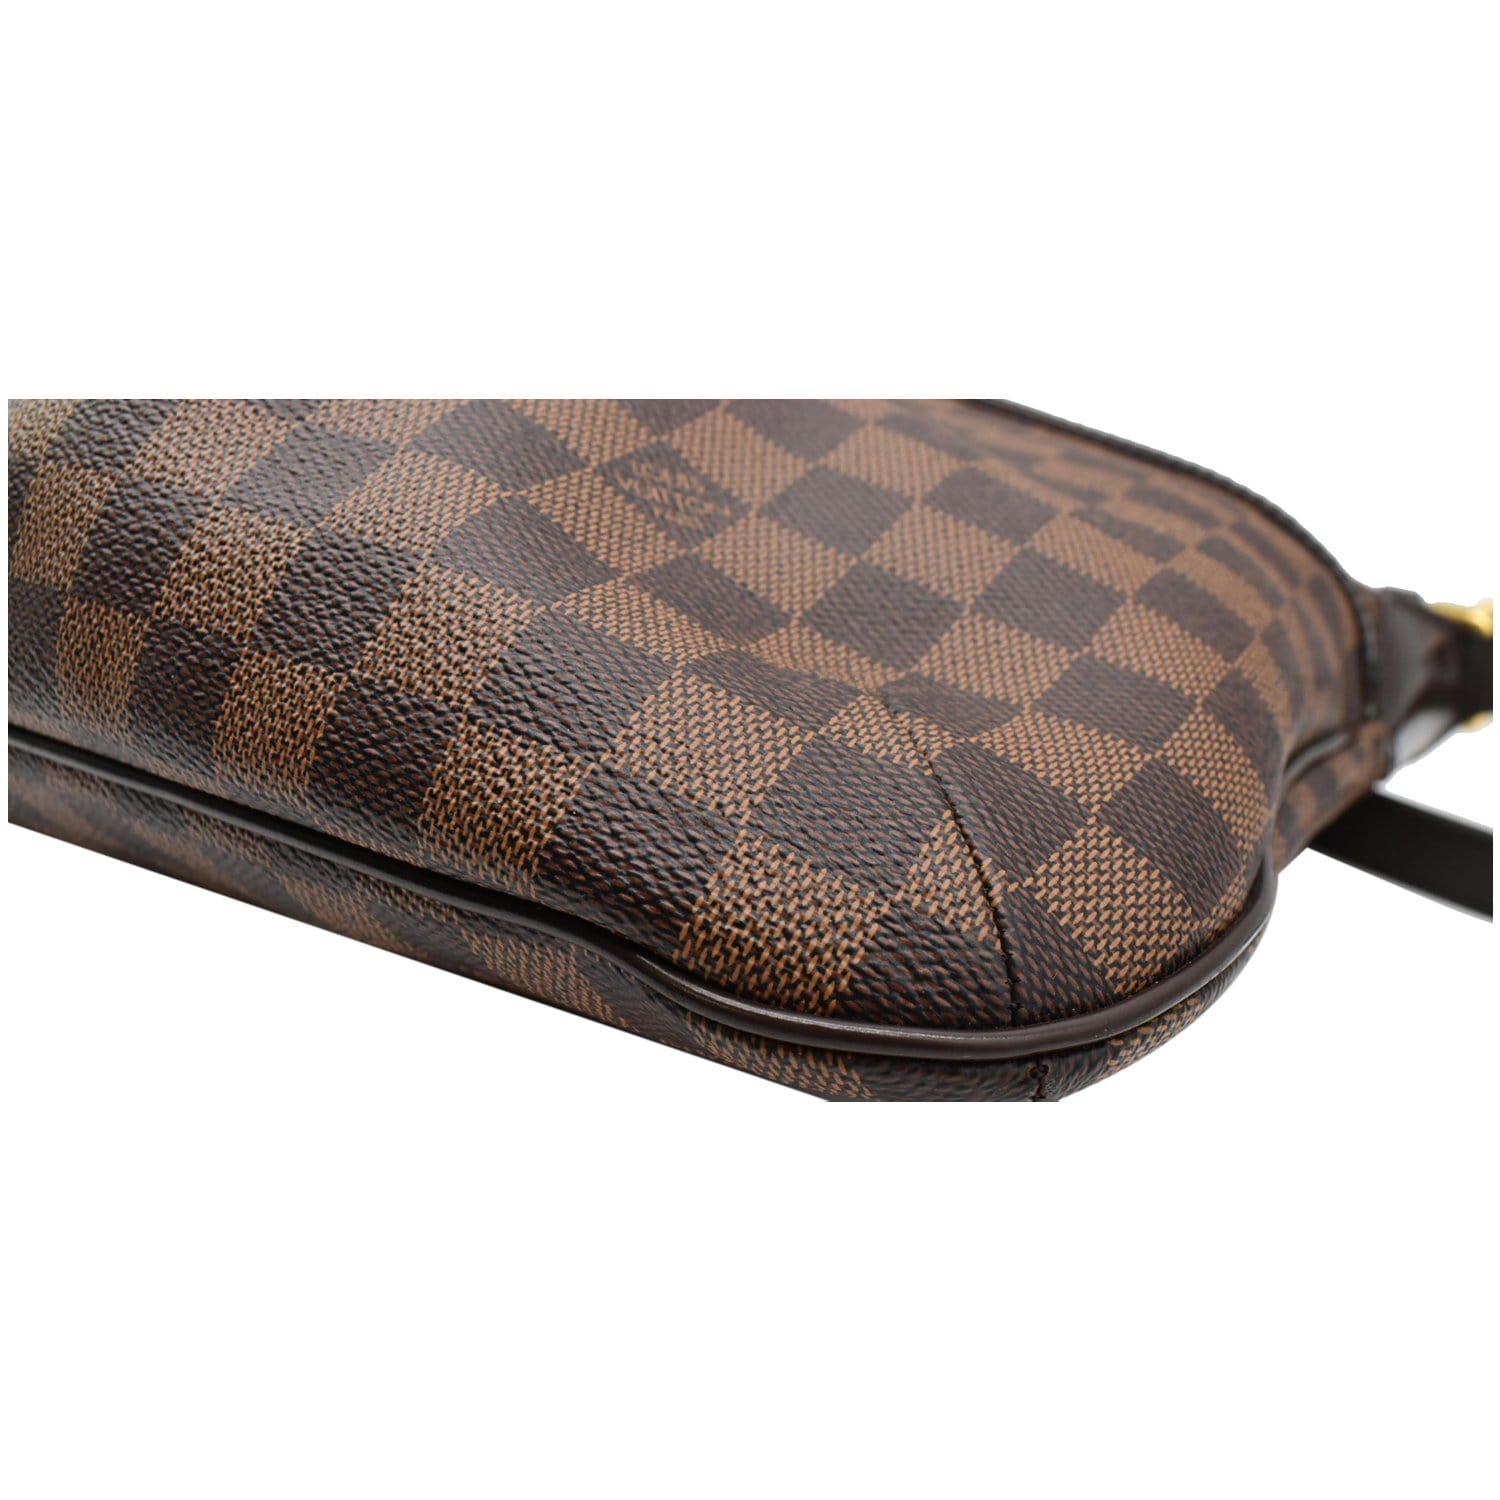 Bloomsbury cloth handbag Louis Vuitton Brown in Cloth - 38875709